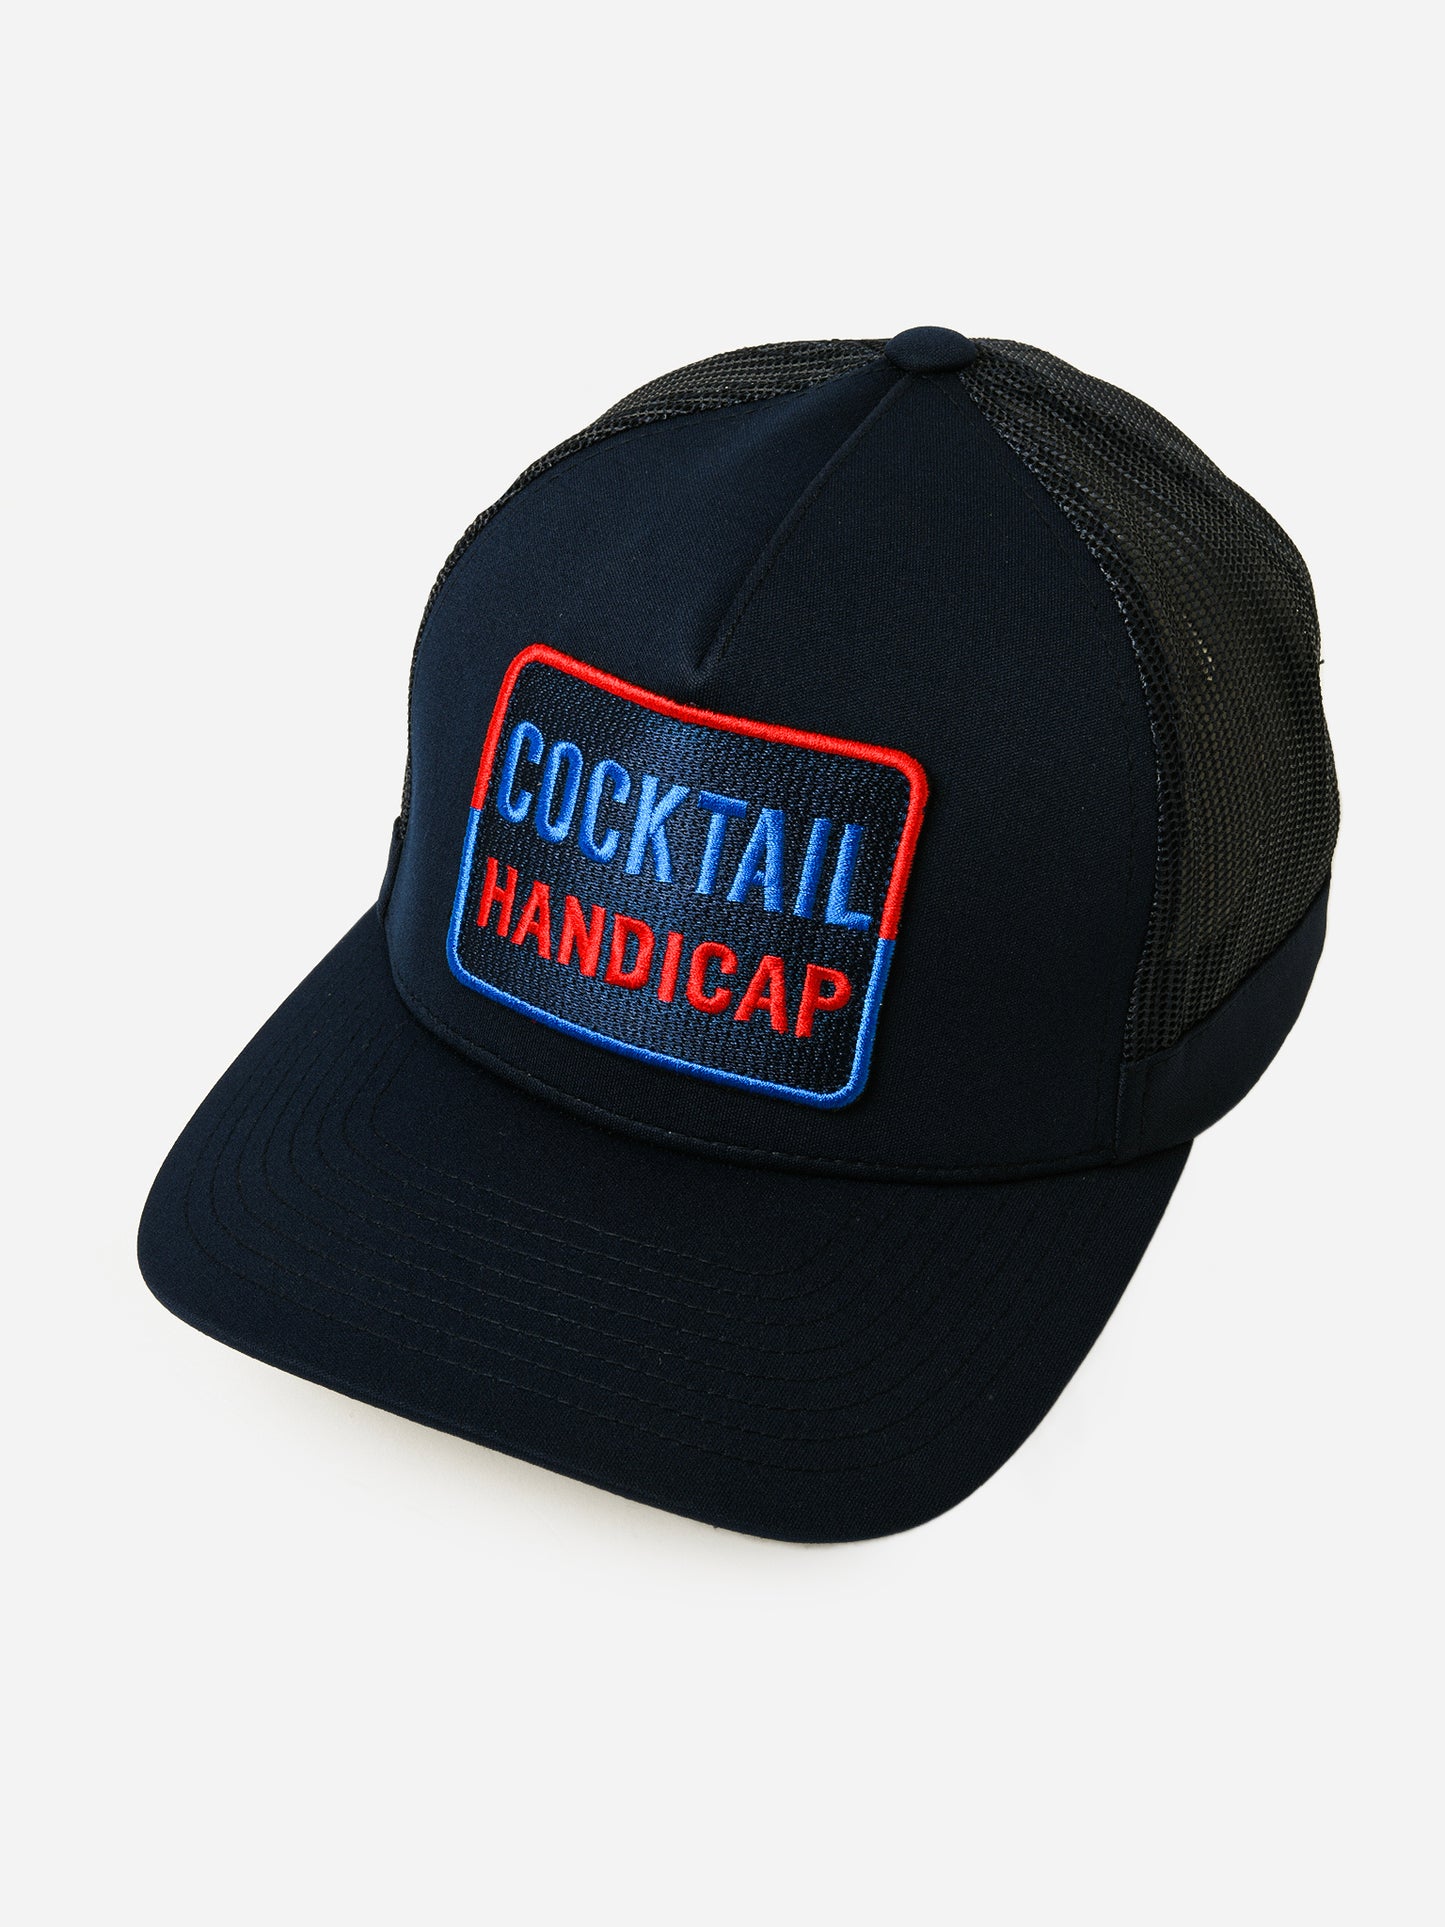 G/FORE Cocktail Handicap Interlock Knit Trucker Hat